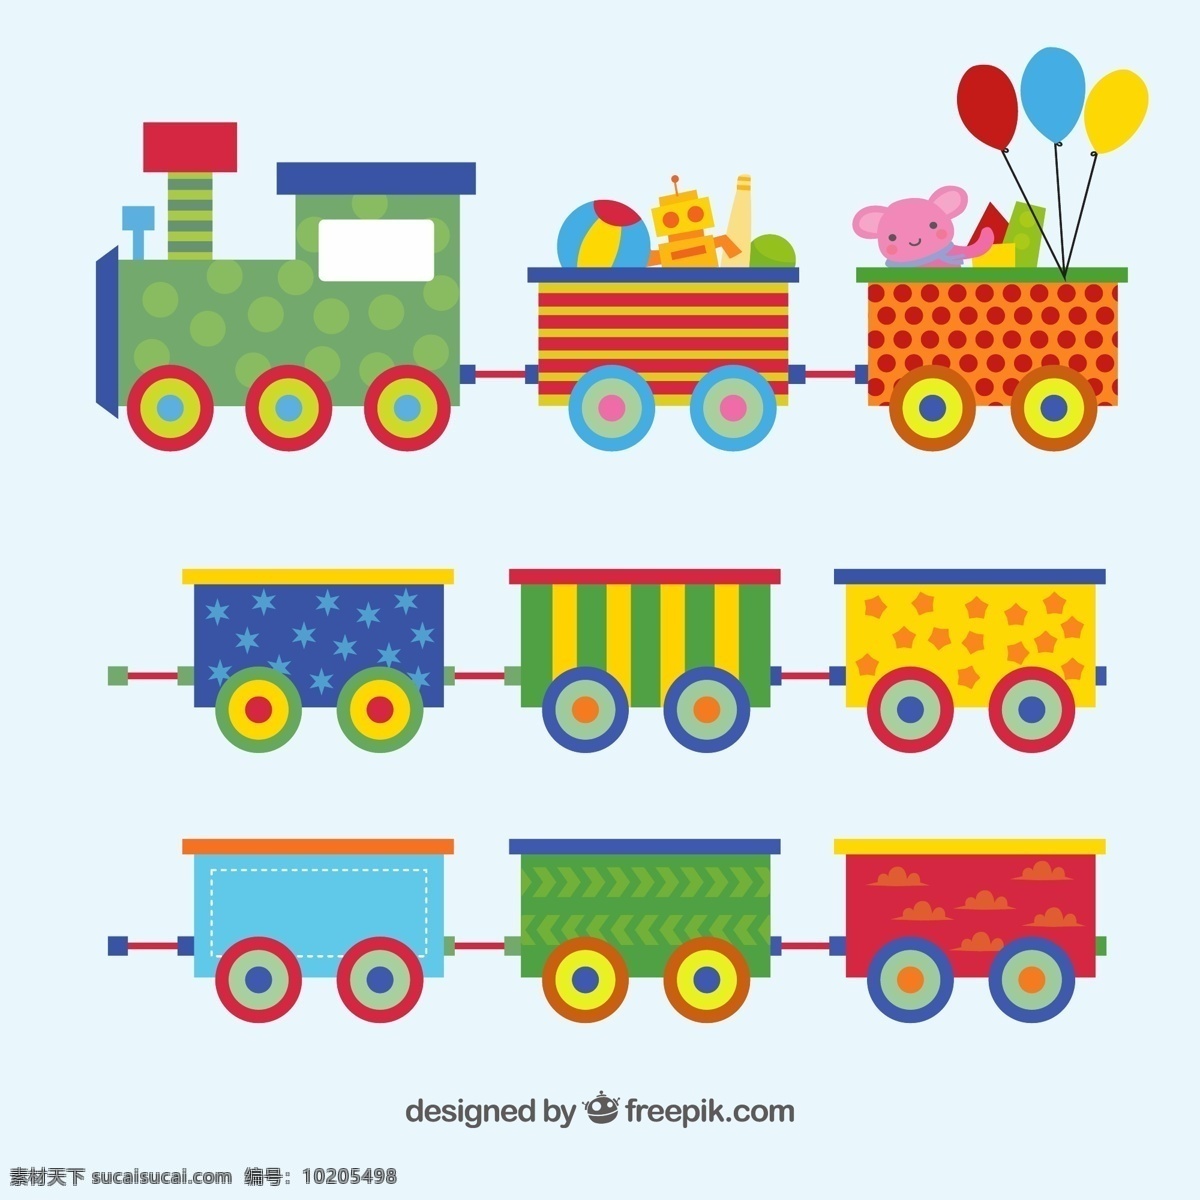 手绘 彩色 玩具 列车 平面设计 彩色玩具列车 平面设计素材